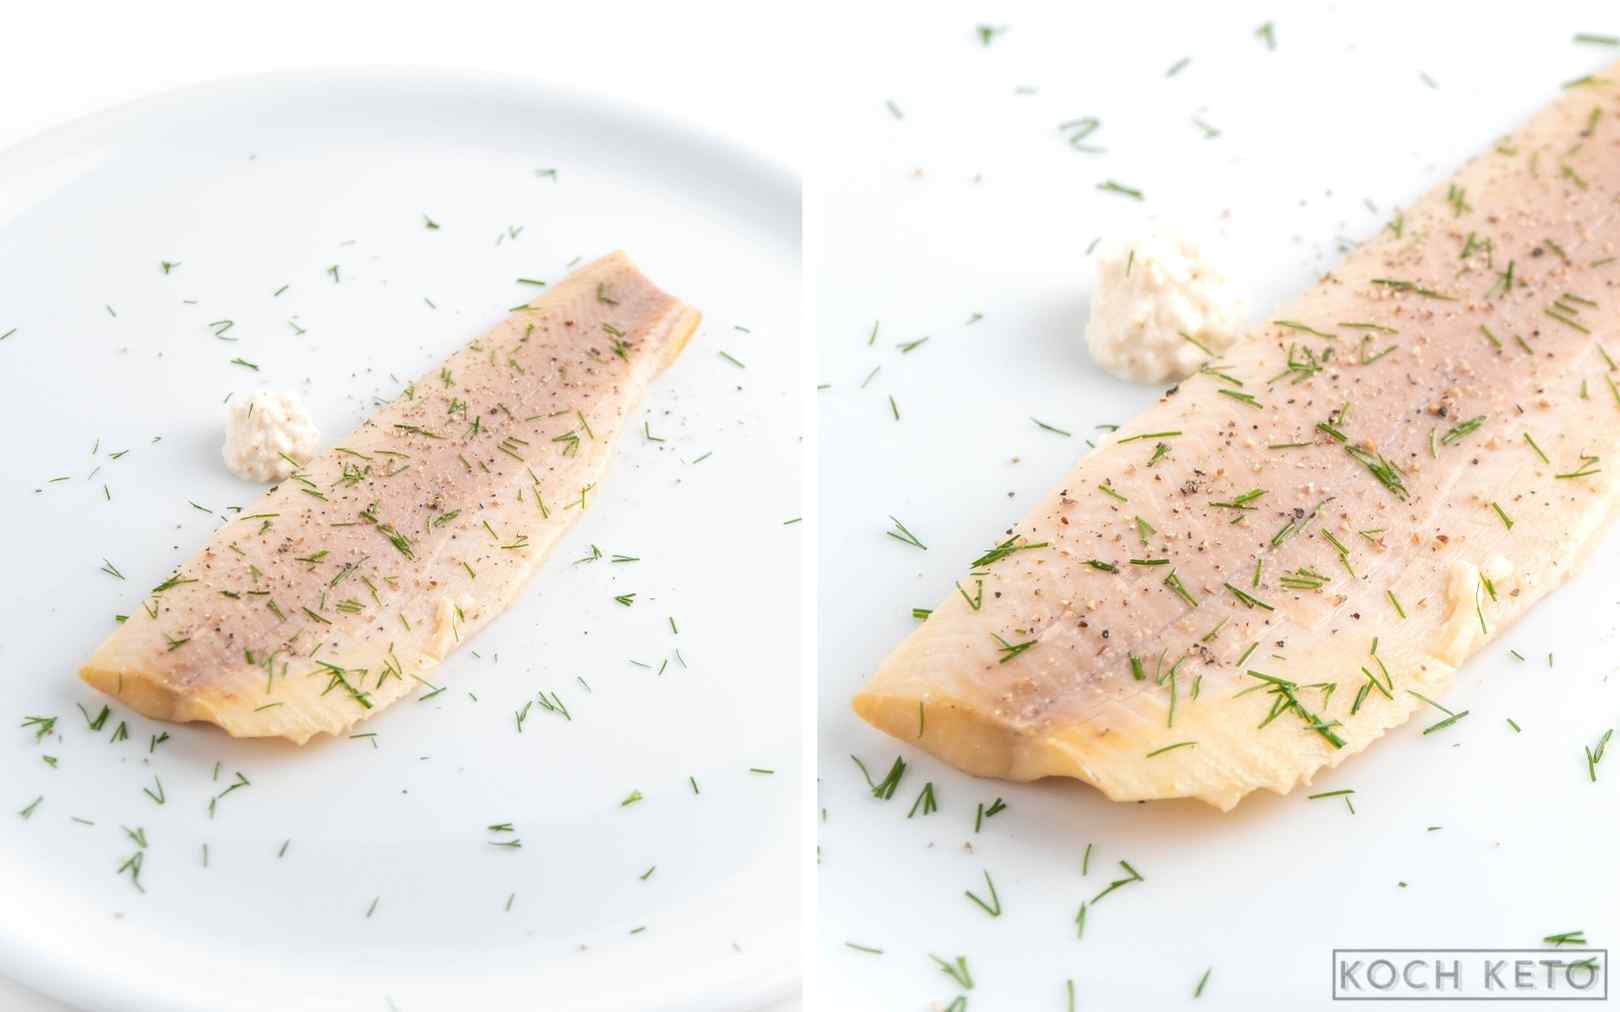 Forellenfilet als schneller Low Carb Snack ohne Kochen und kohlenhydratarm Desktop Image Collage